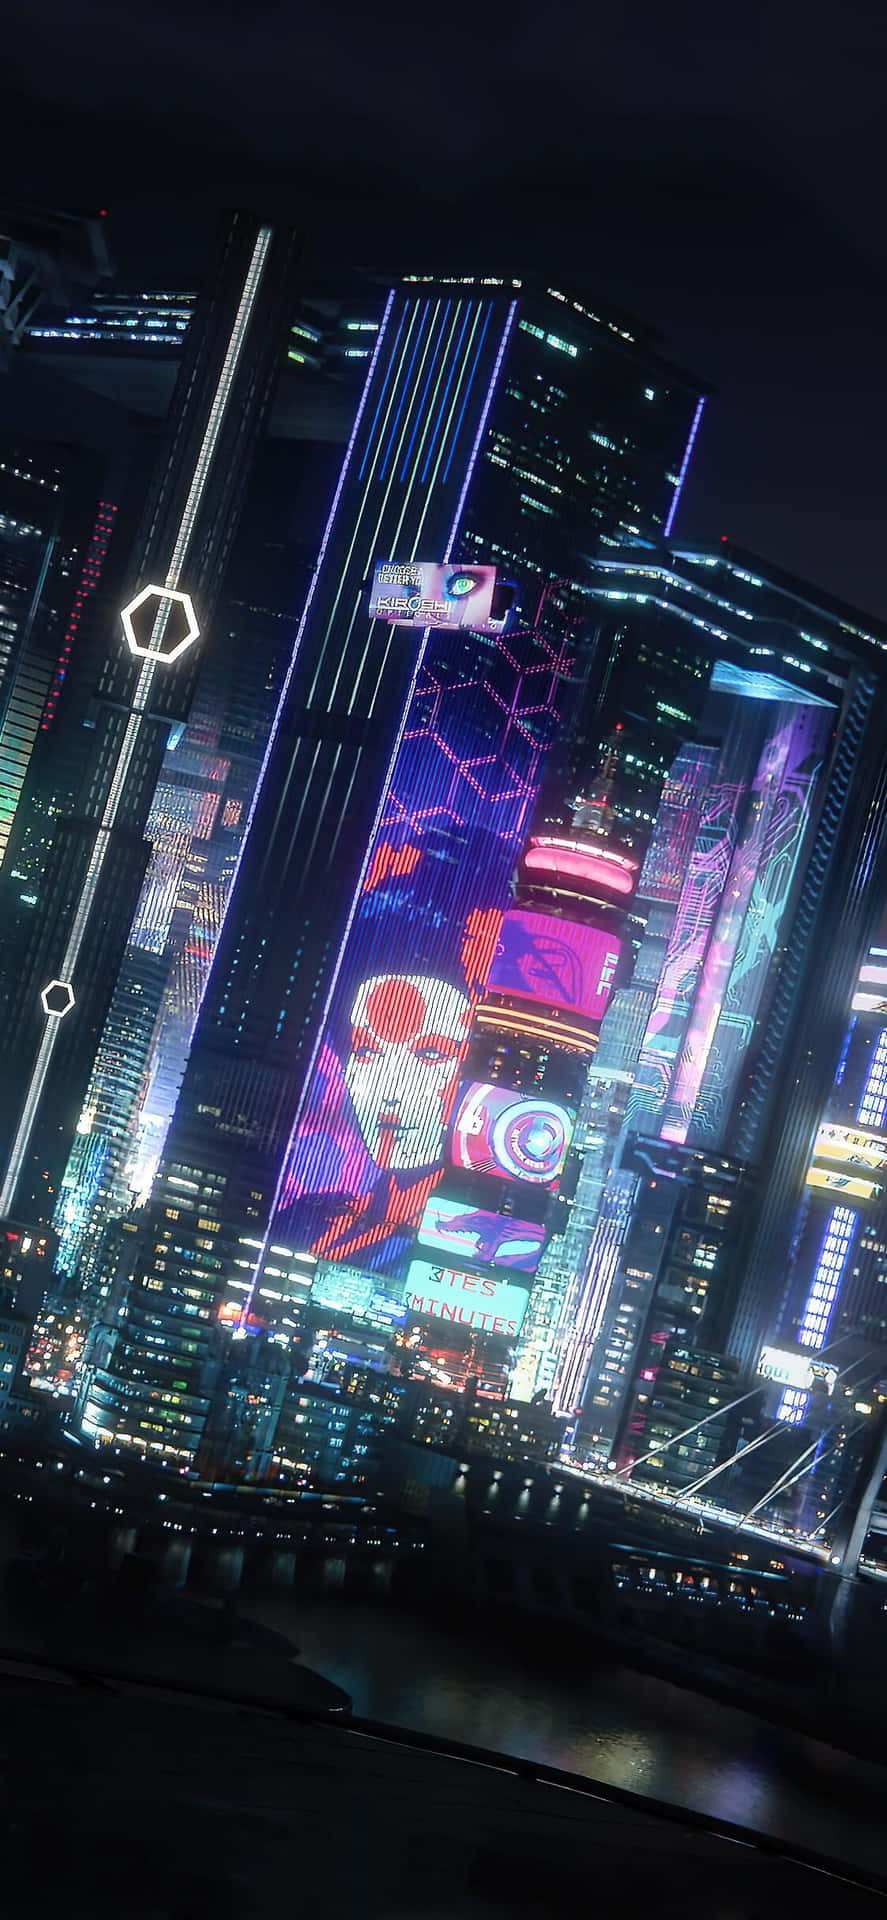 Iphonexs Hintergrundbild Von Night City Im Cyberpunk 2077 Stil